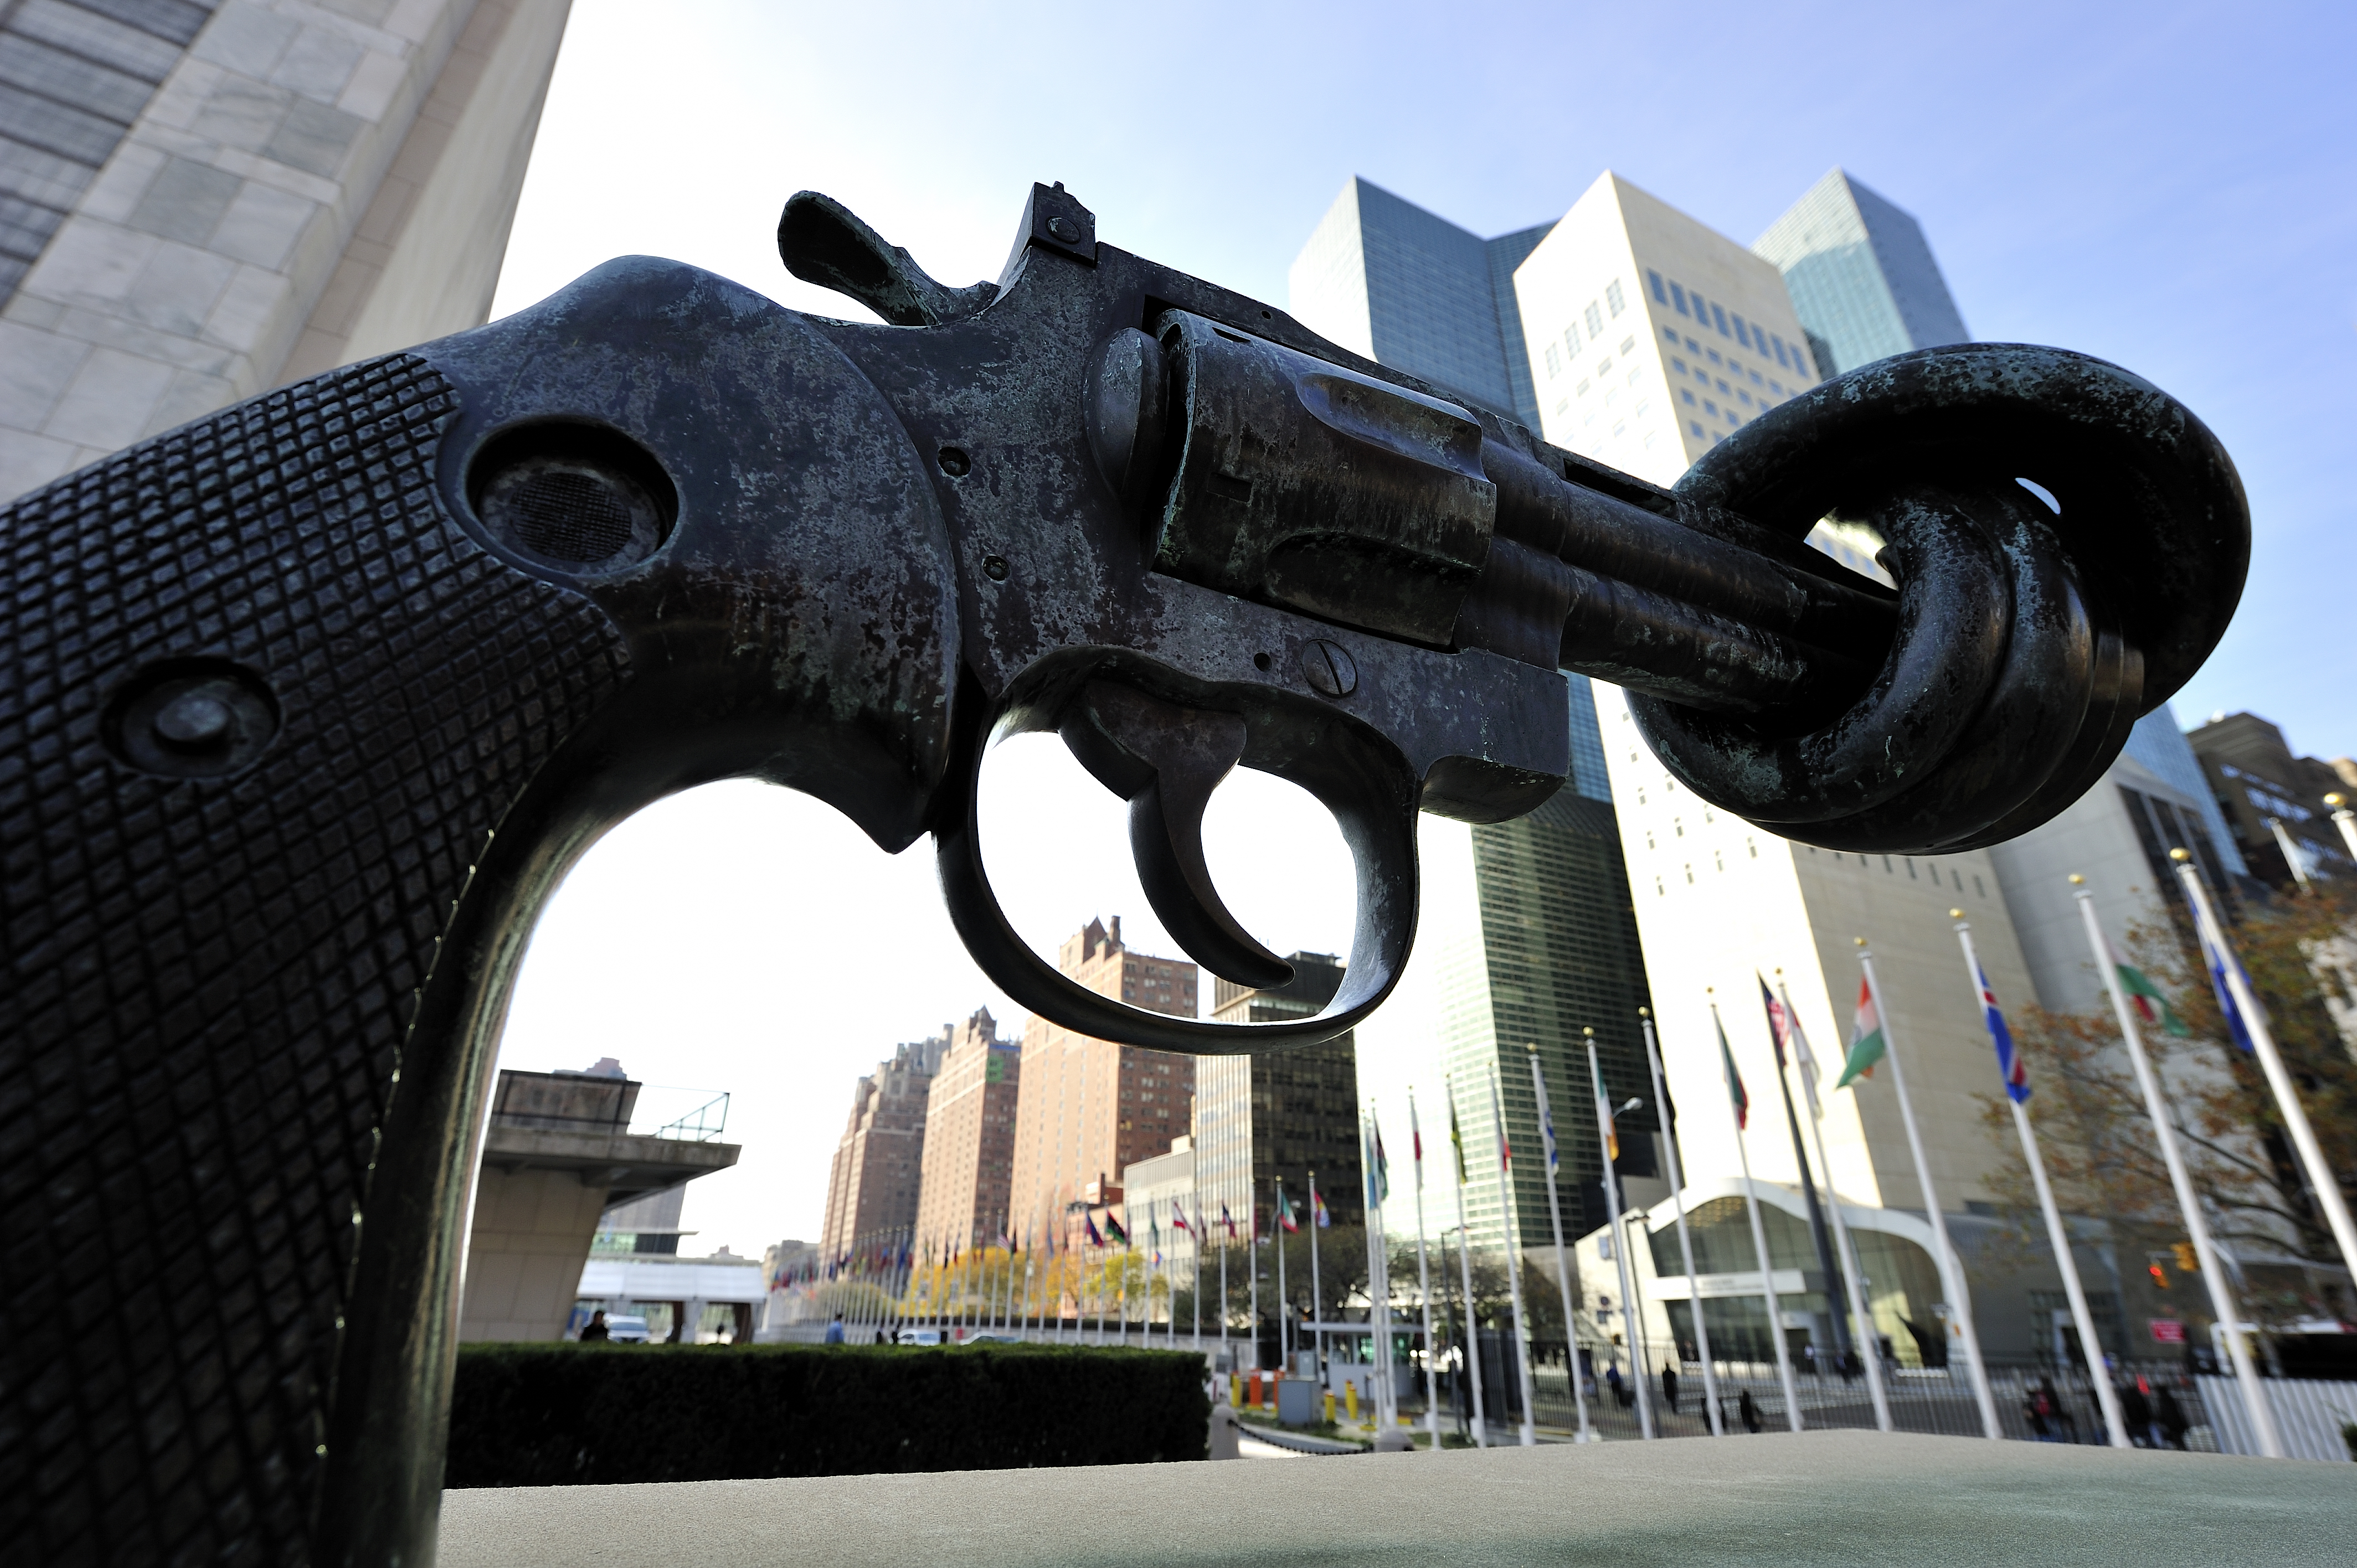 Den knutna pistolen Non Violence, skapad av den svenska konstnären Carl Fredrik Reuterswärd utanför FN-huset i New York.